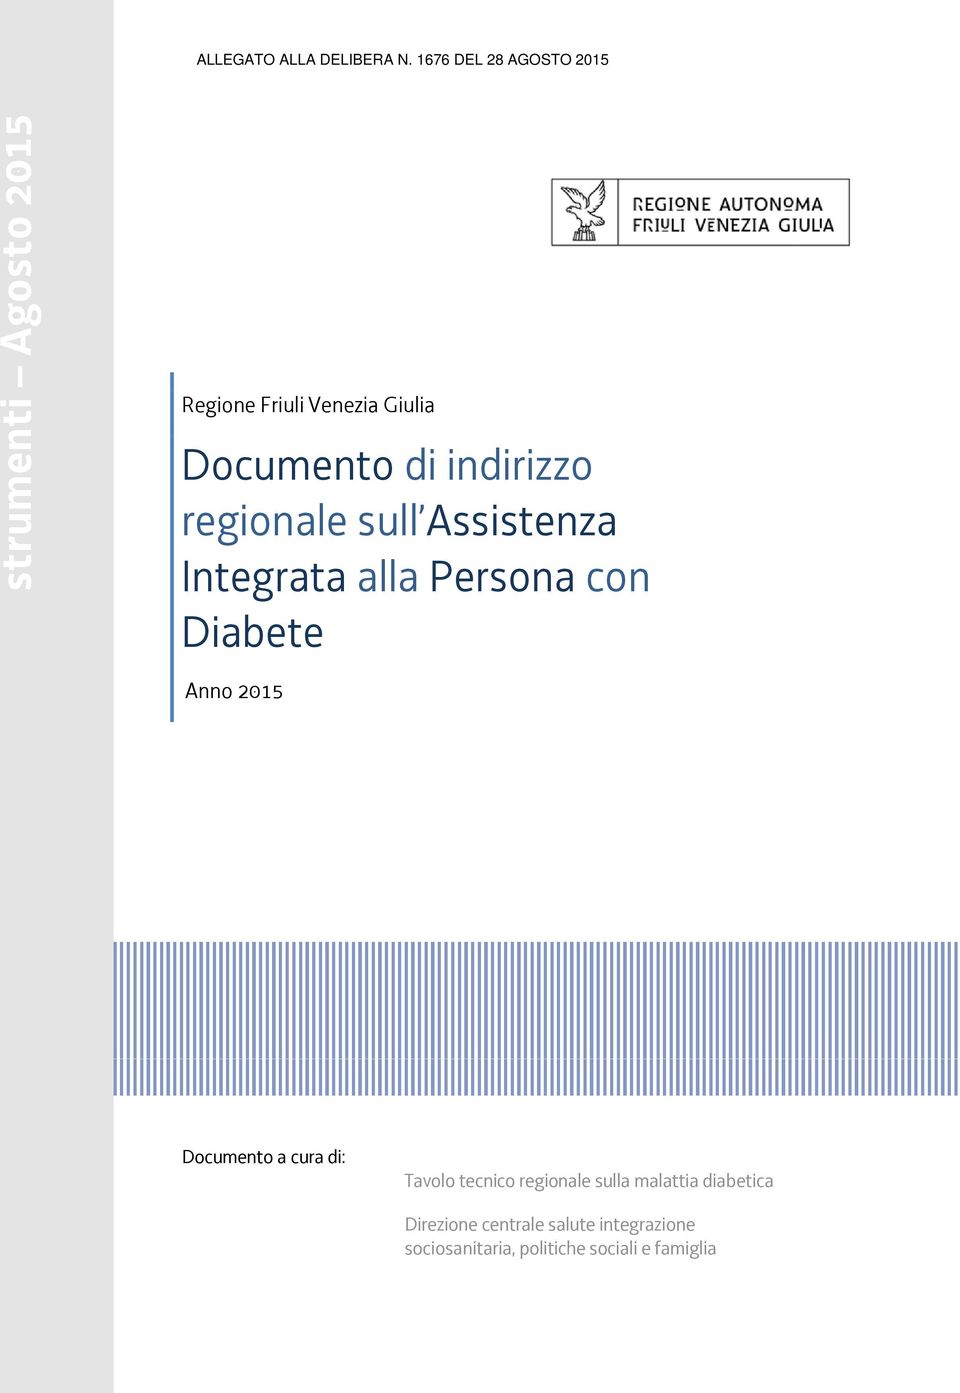 Documento a cura di: Tavolo tecnico regionale sulla malattia diabetica